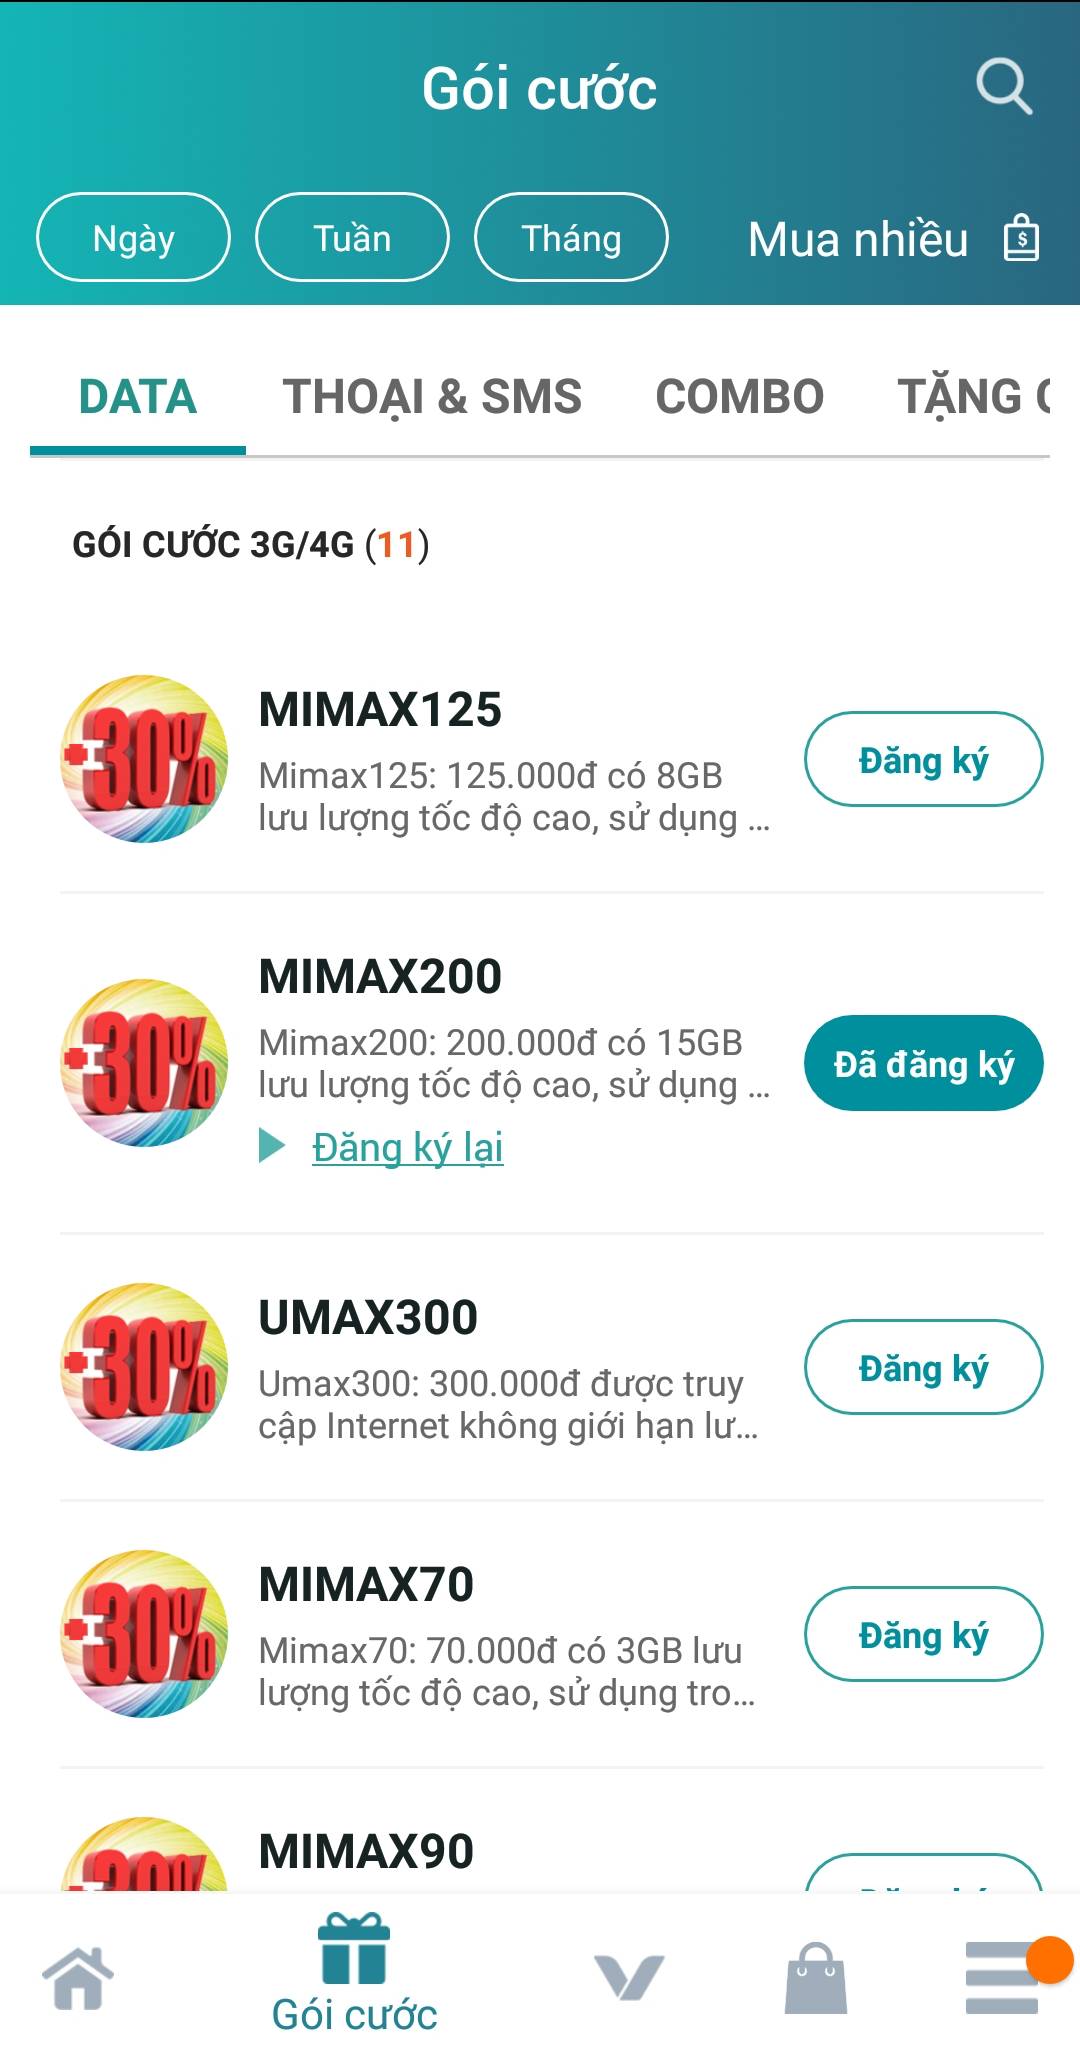 ベトナム:SIM] ベトナムのプリペイドSIM使い方まとめ！データプラン・購入・設定など｜2019年12月更新 Kumi-Log